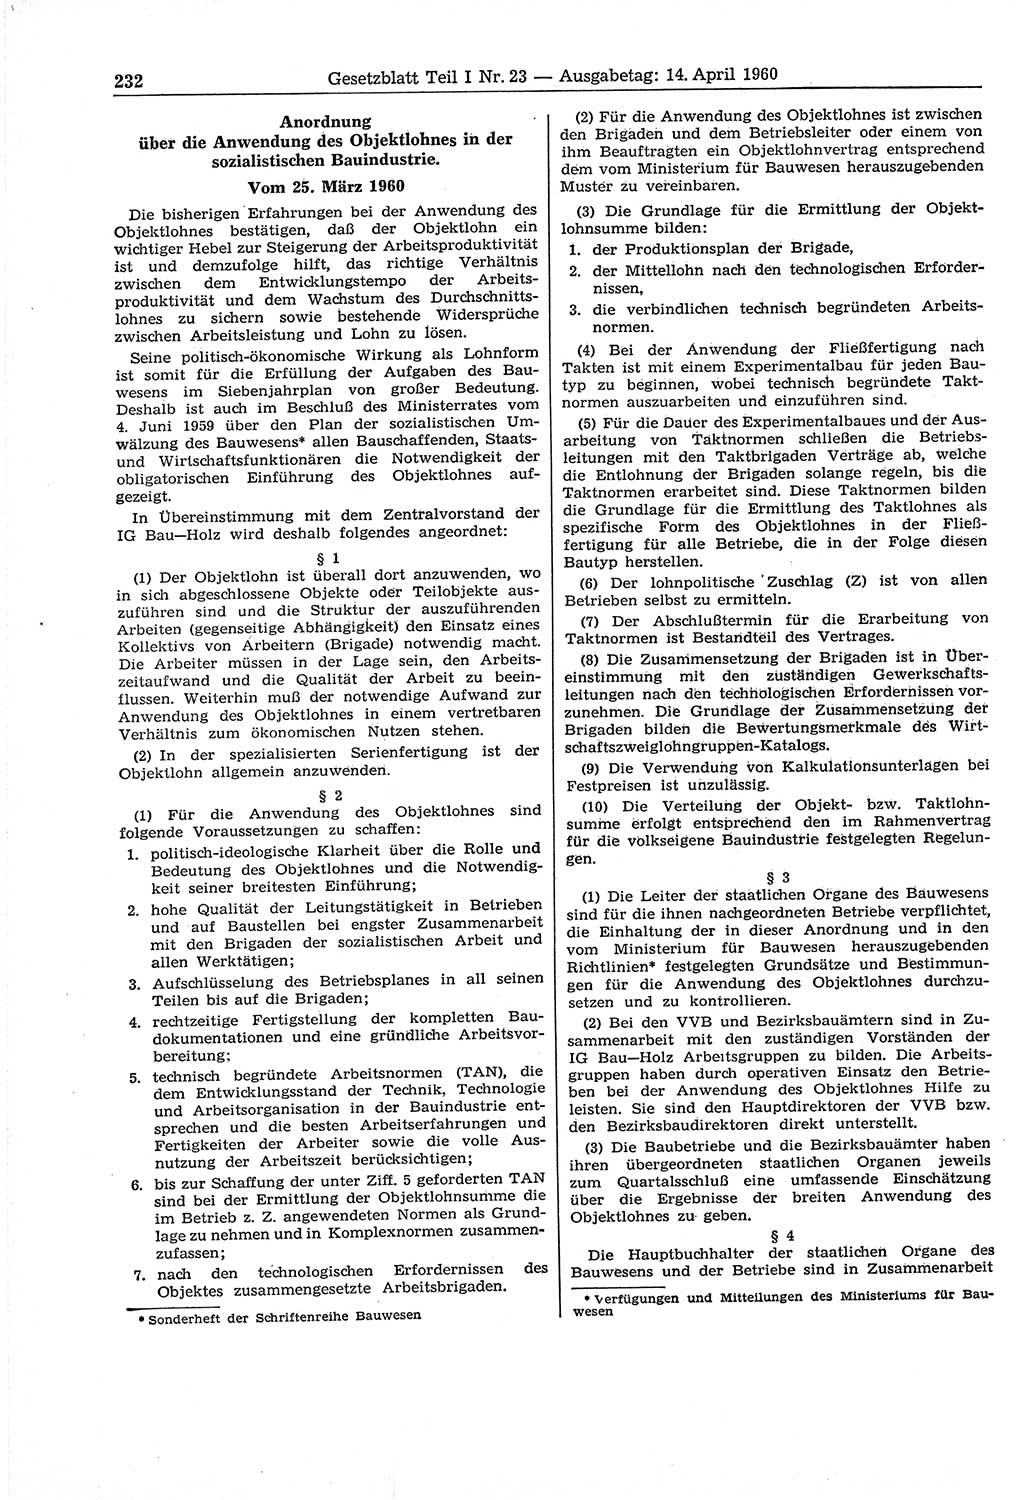 Gesetzblatt (GBl.) der Deutschen Demokratischen Republik (DDR) Teil Ⅰ 1960, Seite 232 (GBl. DDR Ⅰ 1960, S. 232)